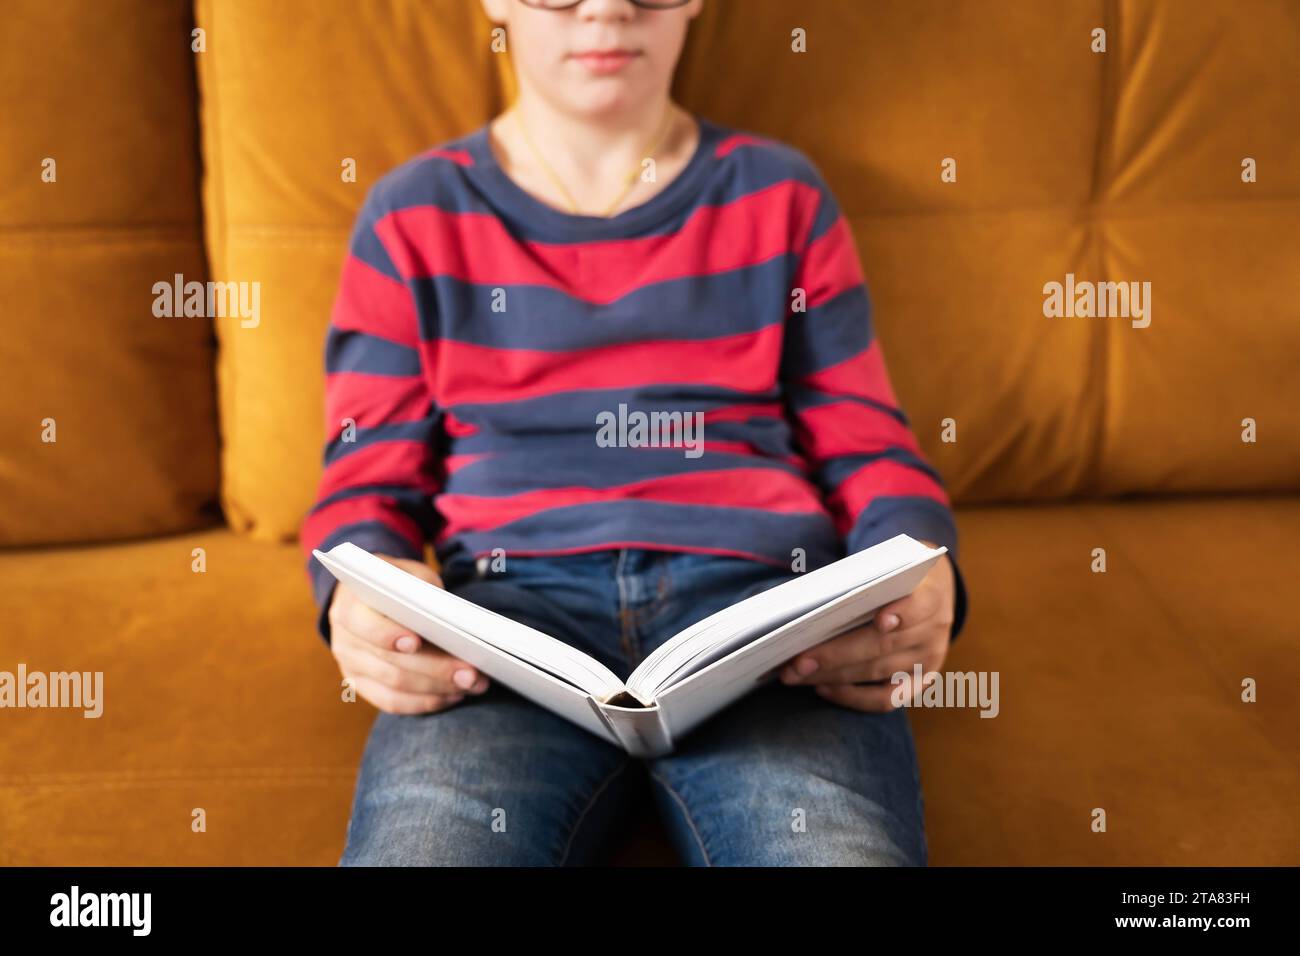 Ein junger, neugieriger Junge mit einer Brille ist vollständig in ein Buch eingetaucht, während er bequem auf der Couch sitzt, was die Freude der jungen Entdeckungen und des anderen unterstreicht Stockfoto